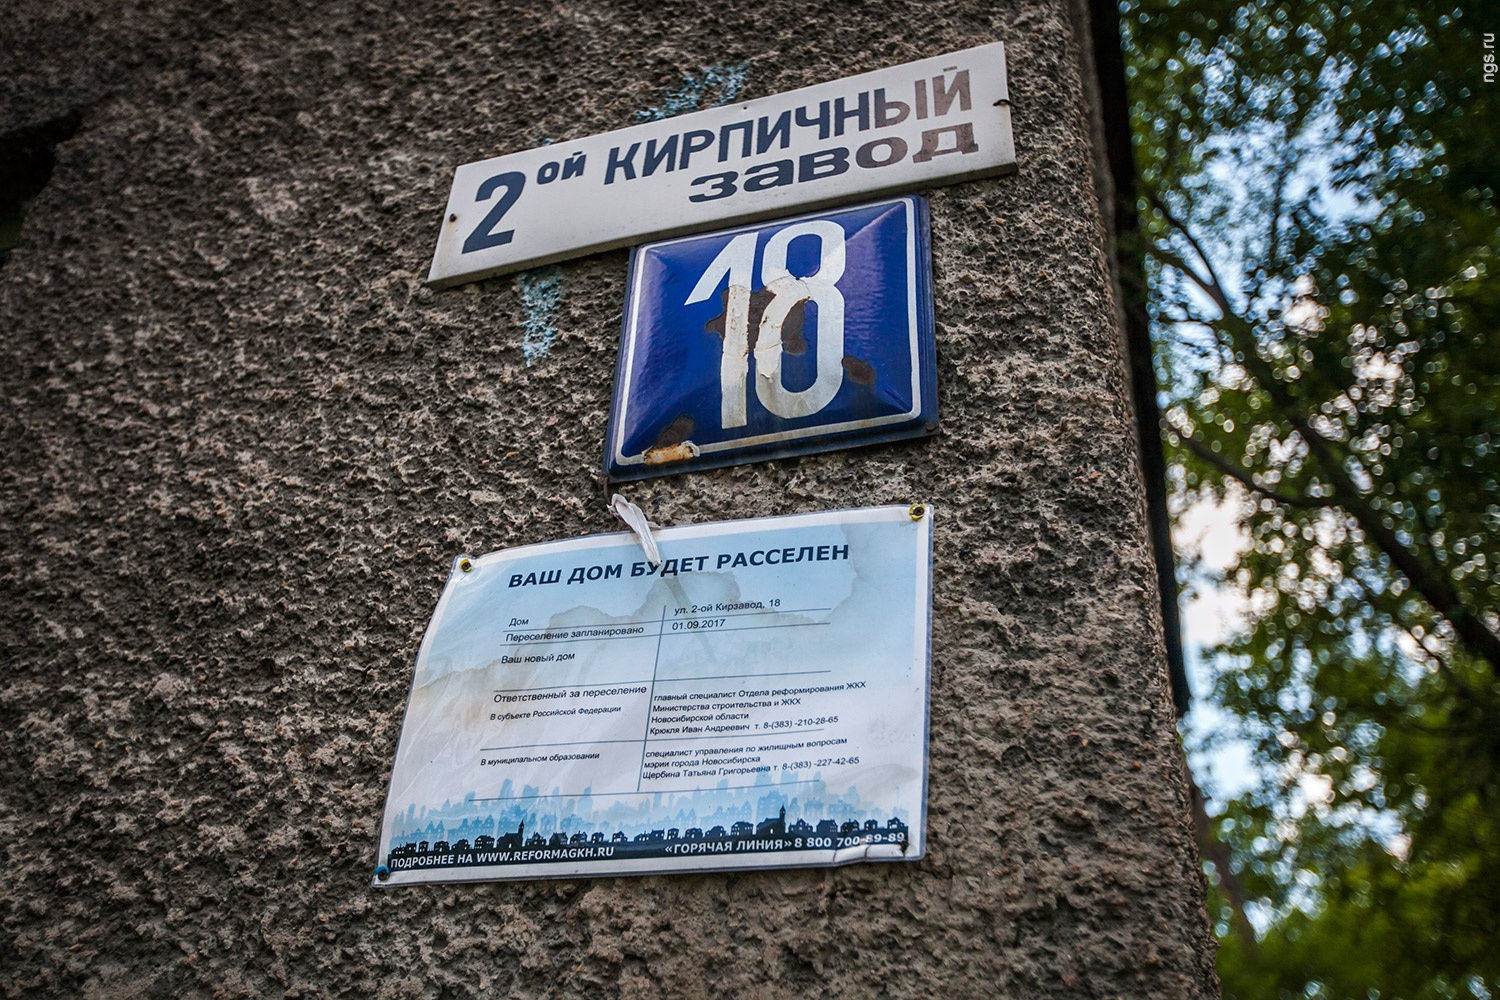 Аварийный дом на улице 2 Кирзавод, 18 изношен на <nobr class="_">81 %</nobr>